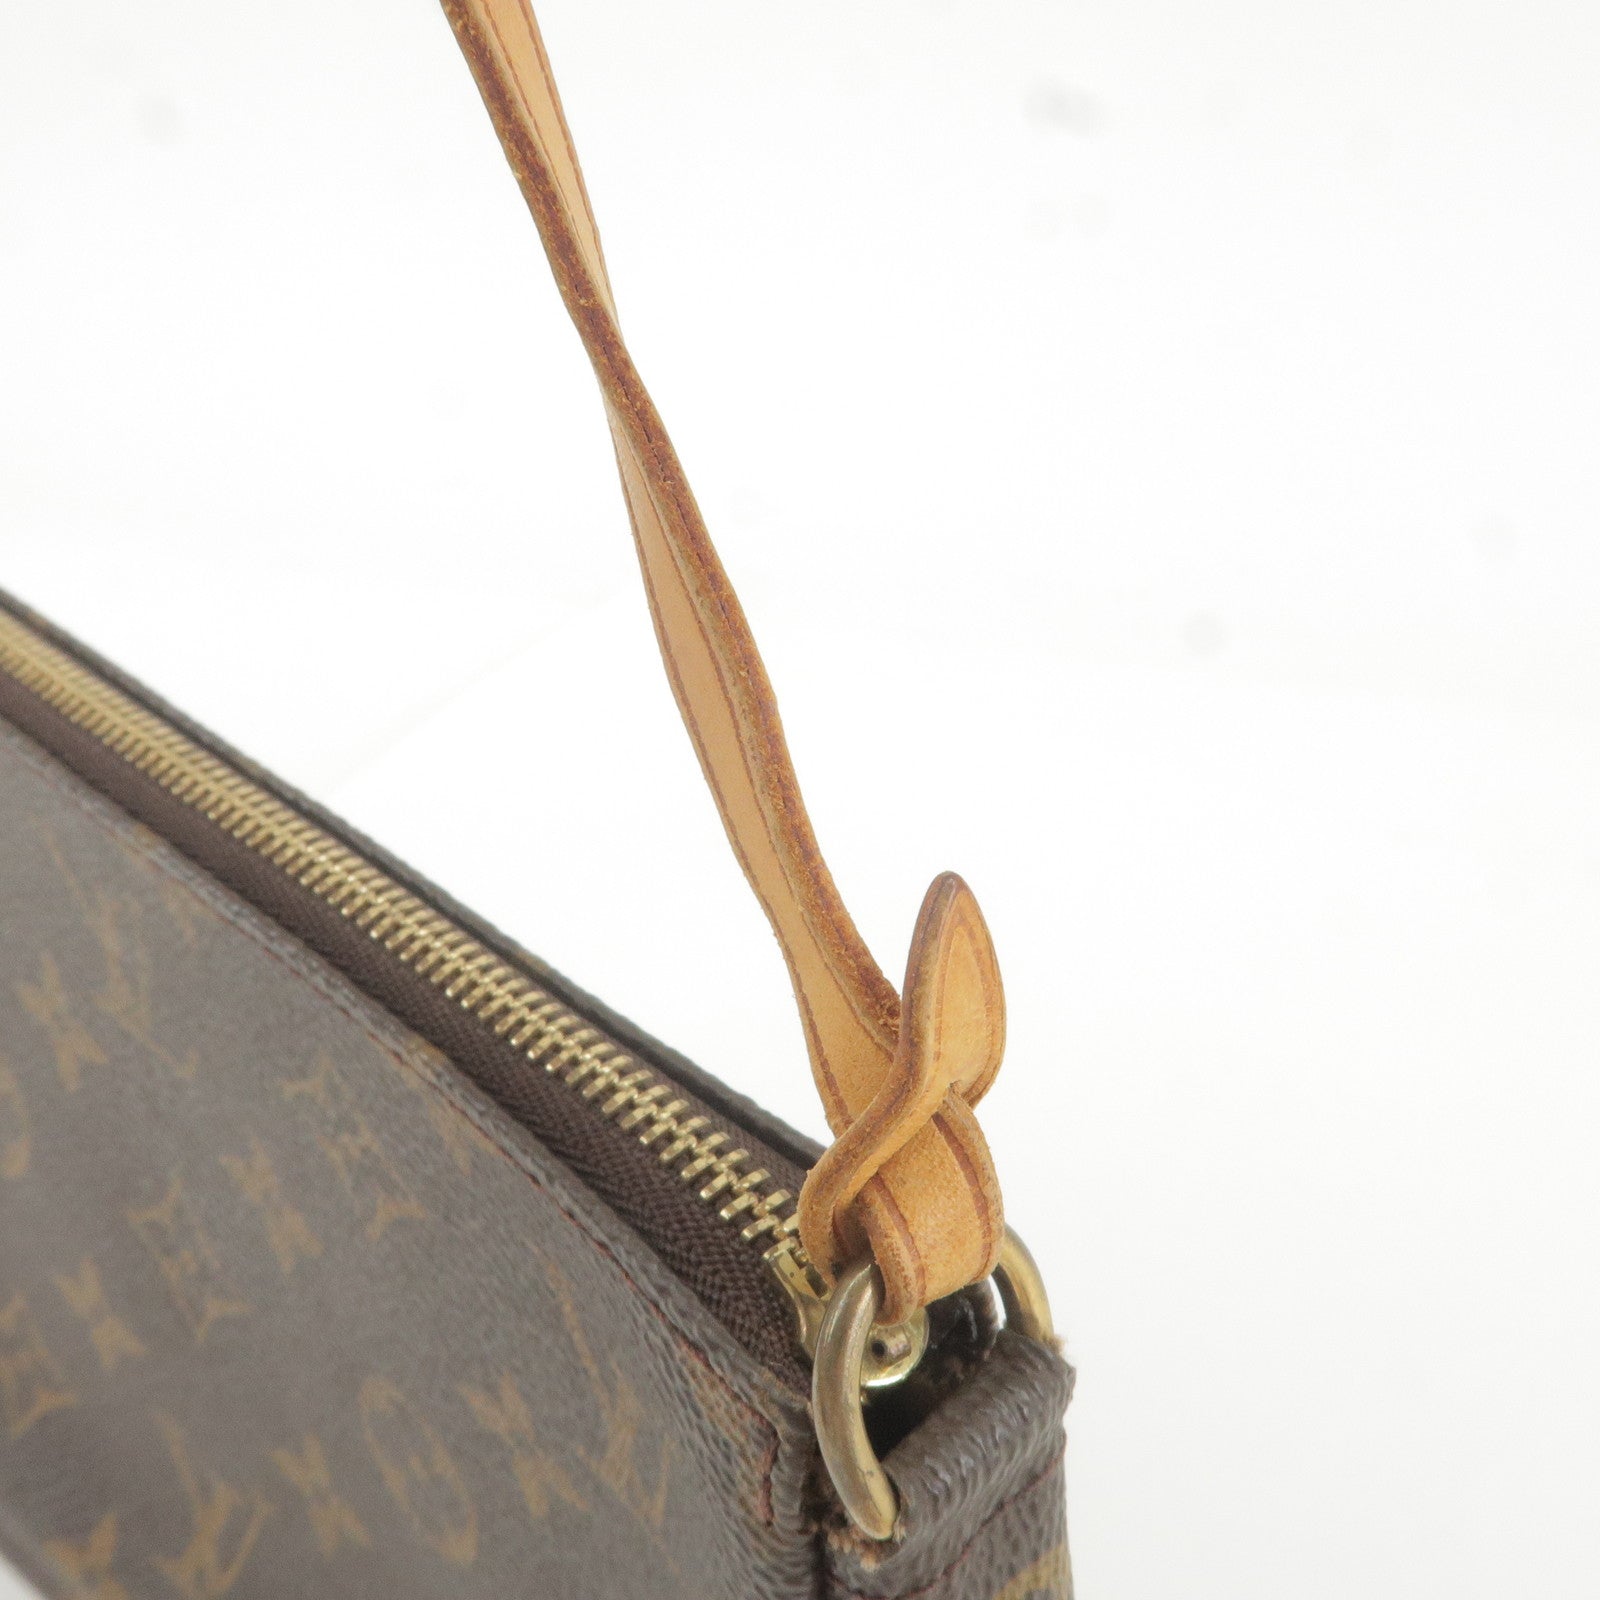 Vintage Louis Vuitton Pochette Accessoires M51980